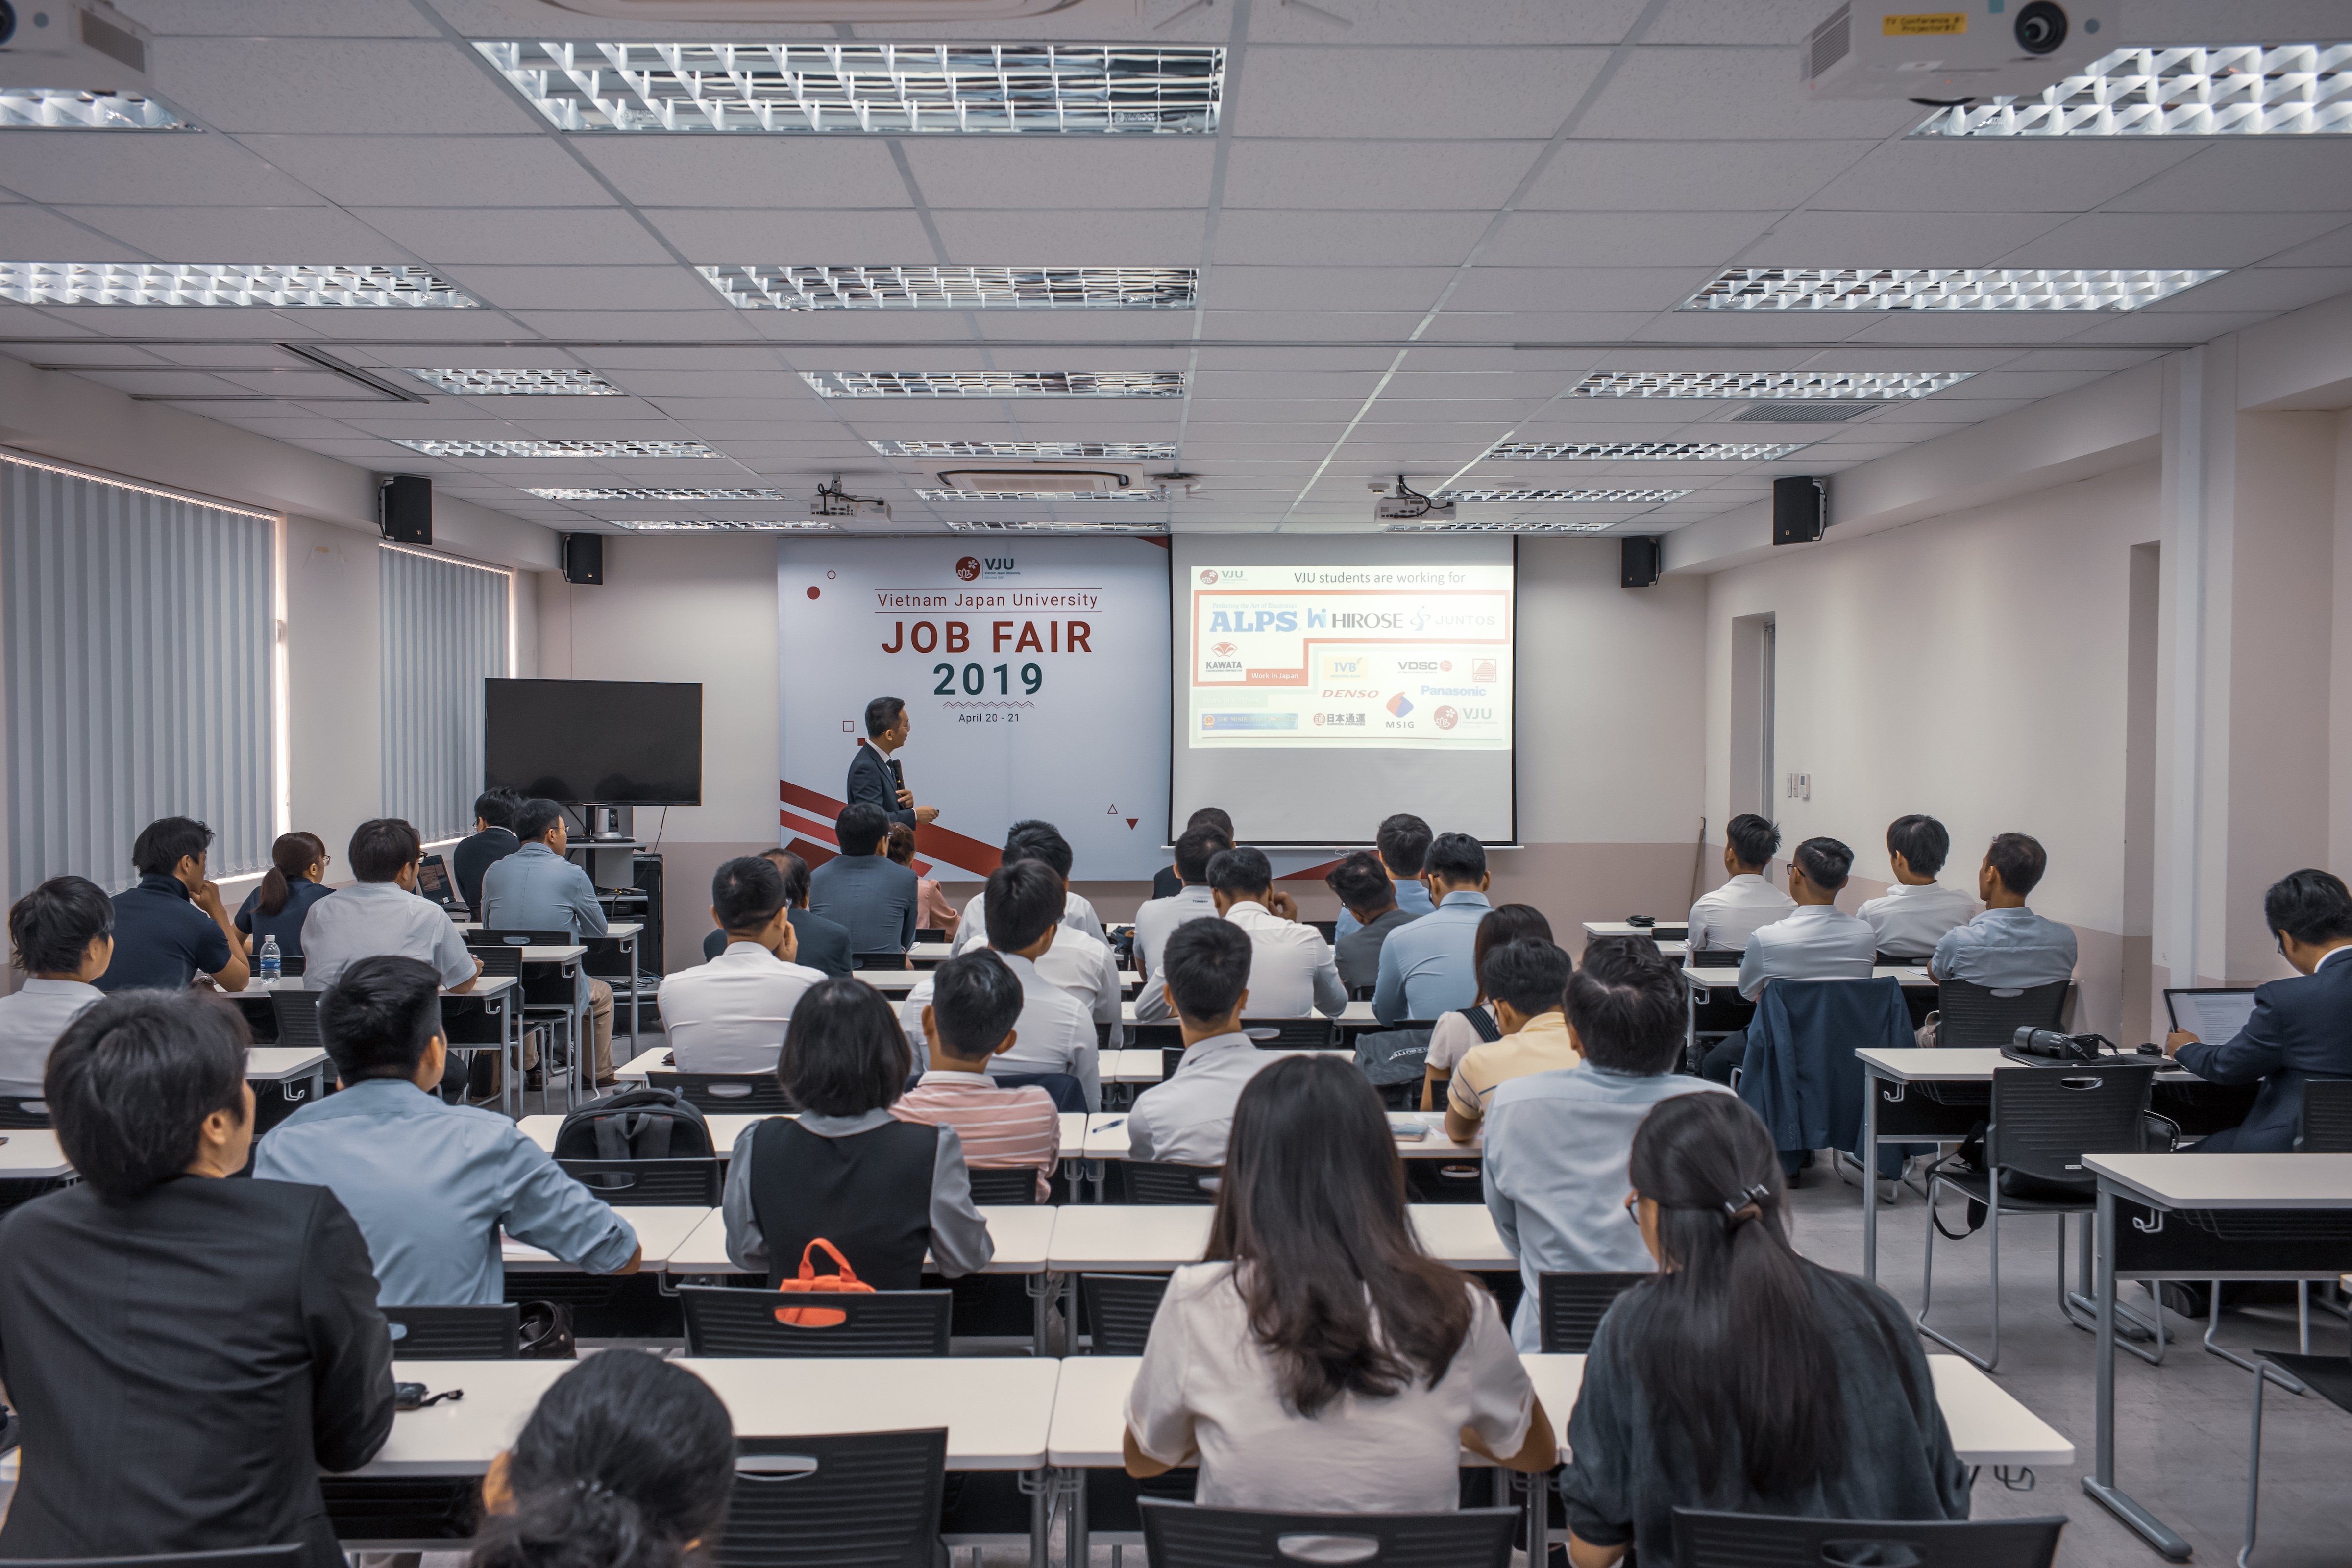 日越大学 – VJU (Vietnam Japan University) Job Fair 2019